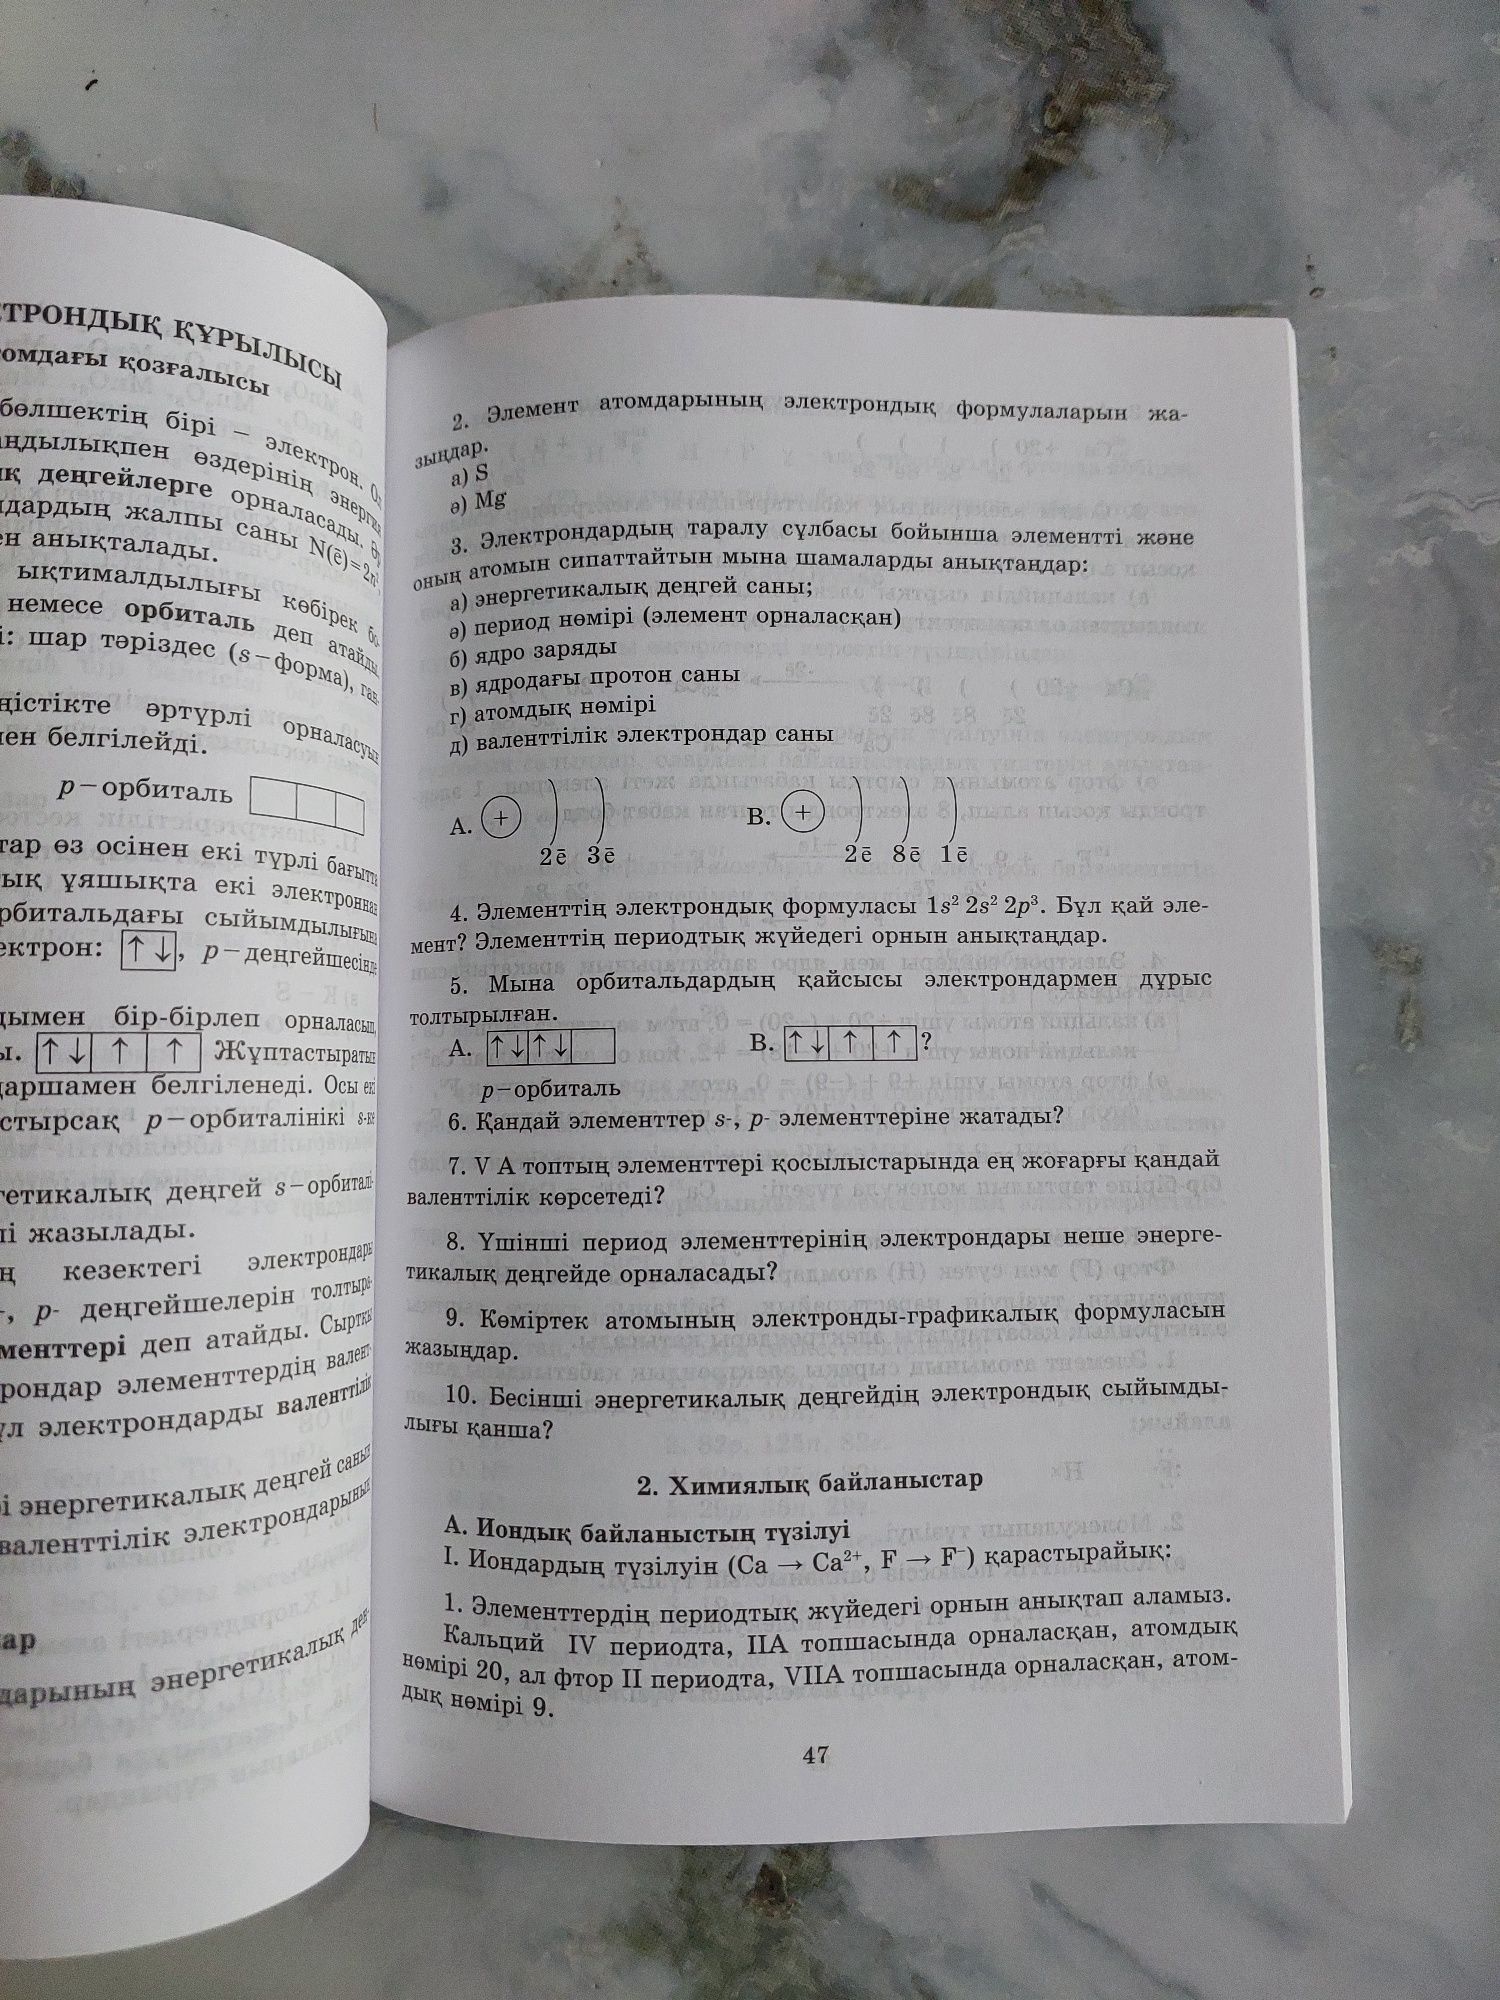 Химия есептер кітапшасы